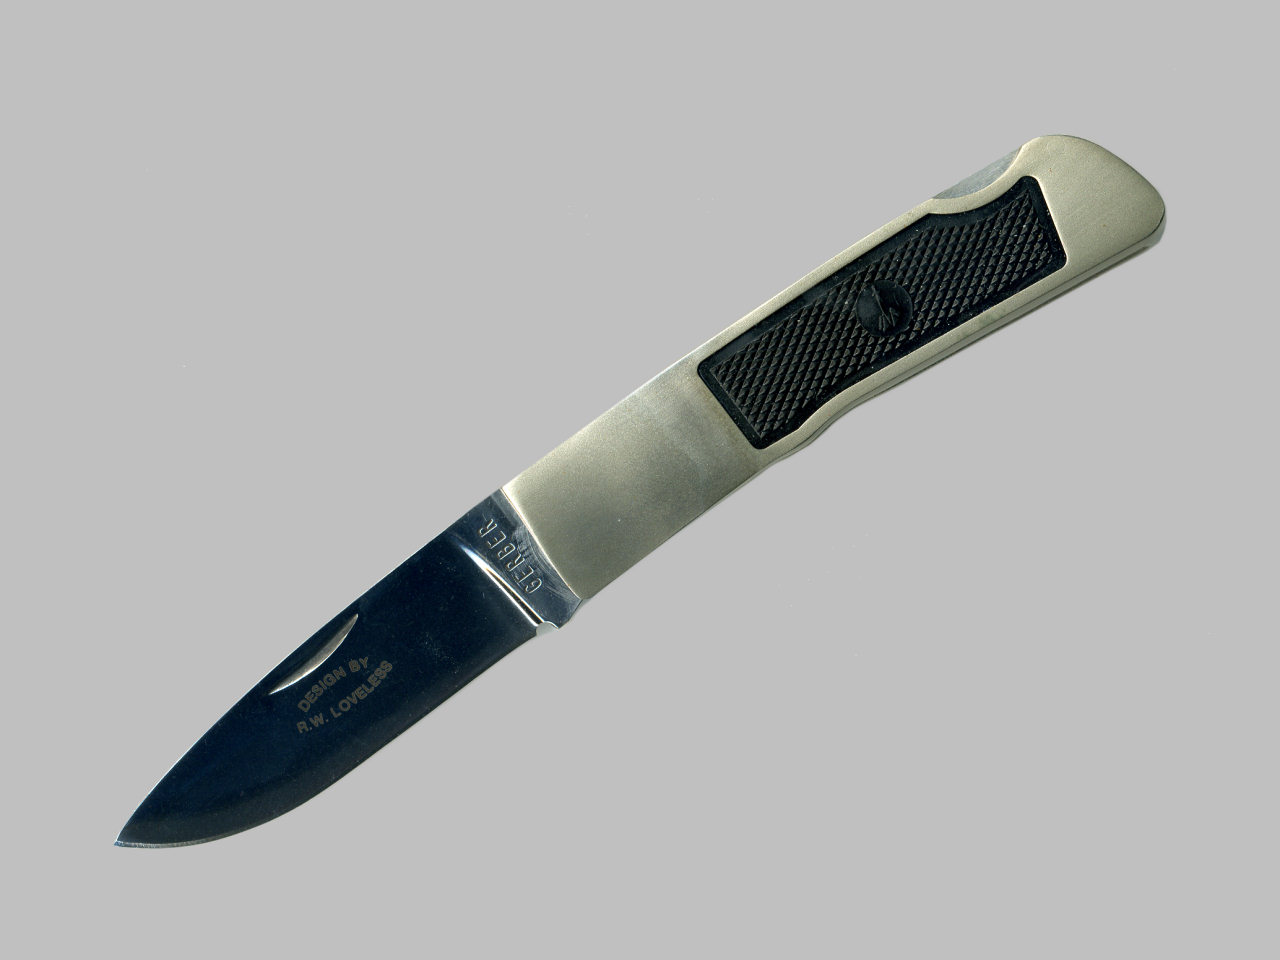 ラブレス・フォールディング・ナイフ(Loveless folding knife)